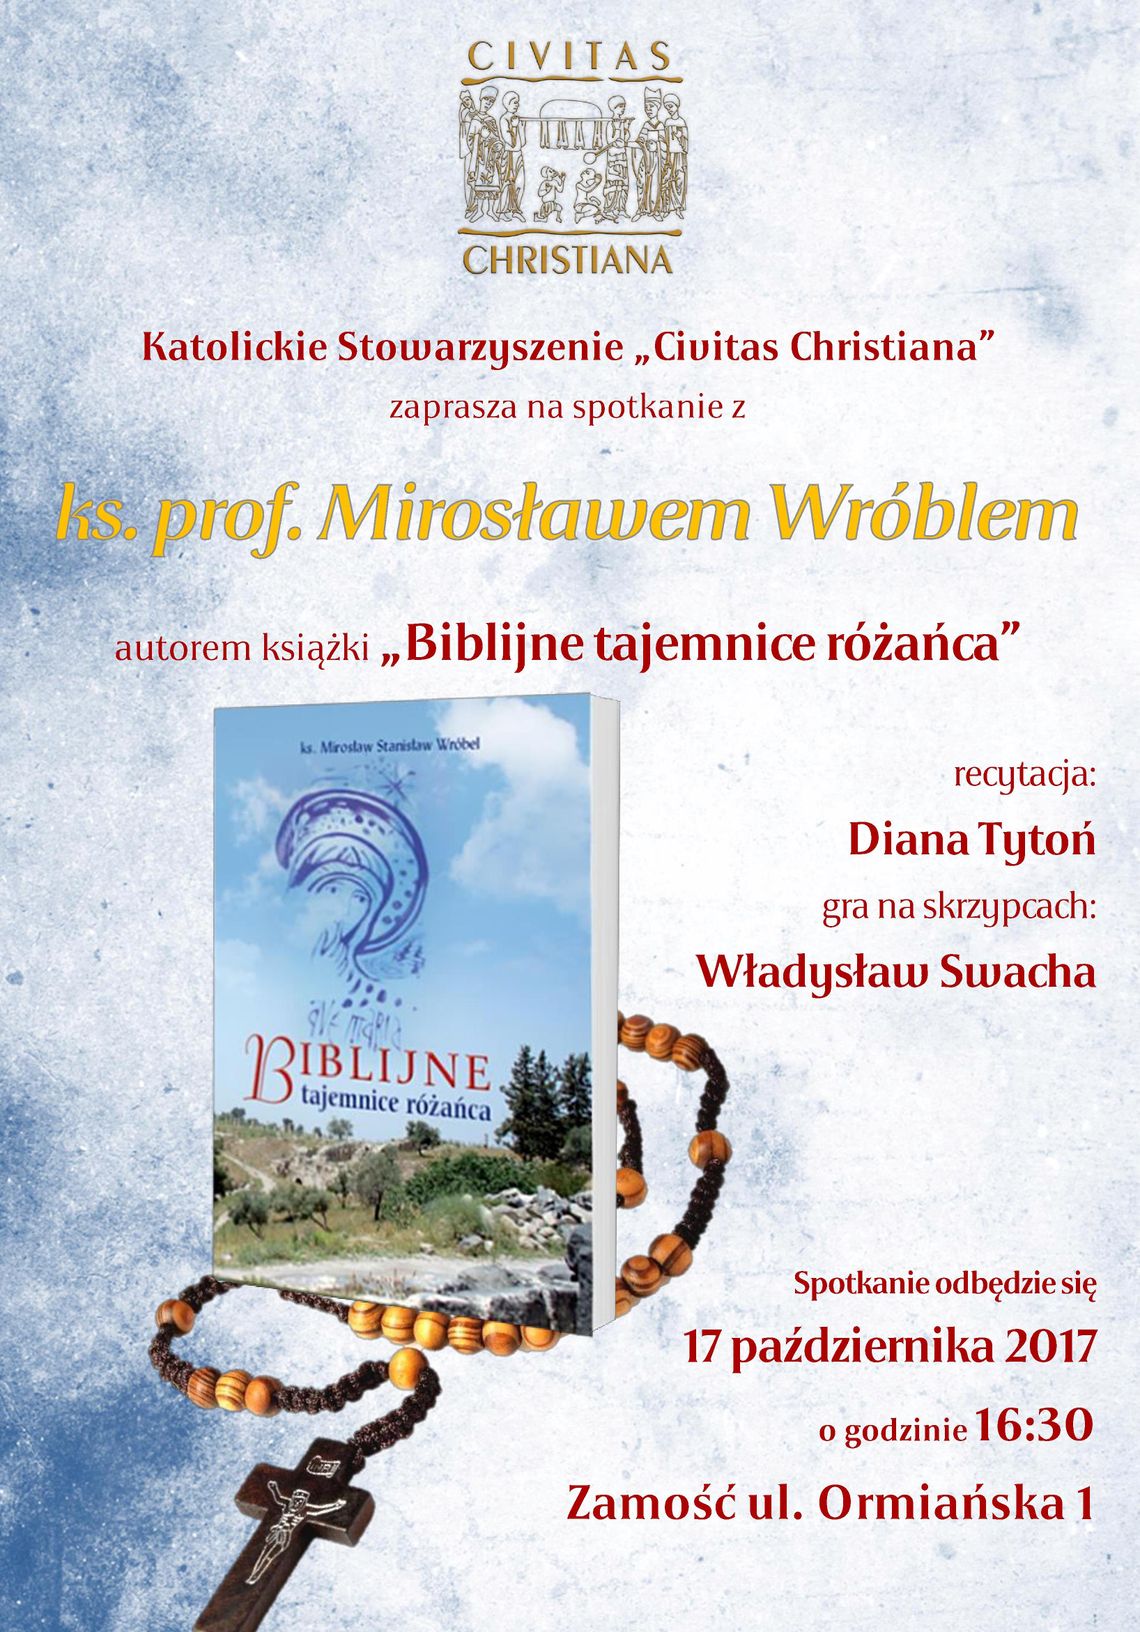 Zamość: Biblijne tajemnice różańca - spotkanie z ks. Mirosławem Wróblem